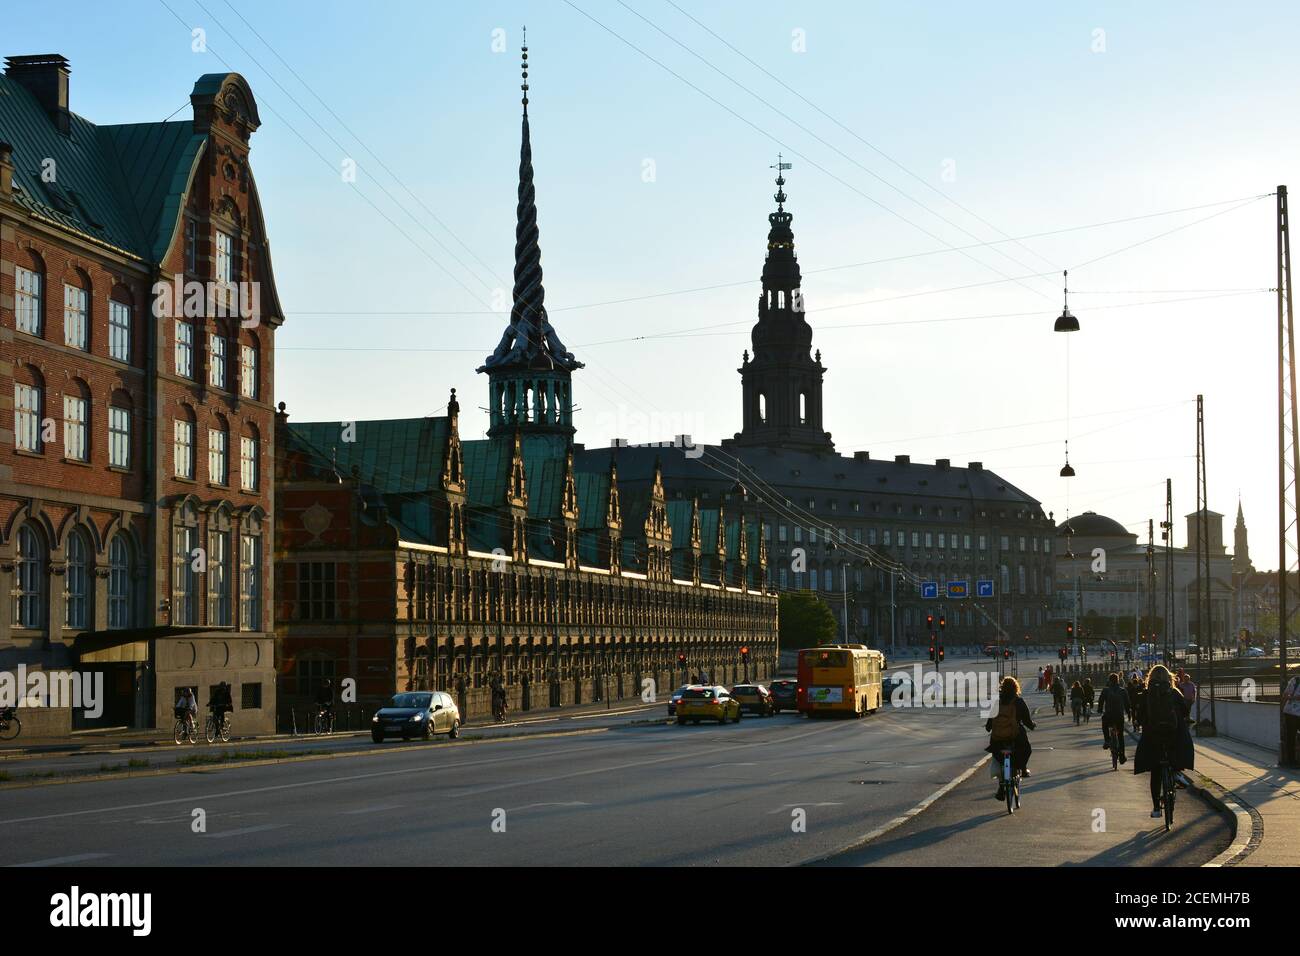 Copenaghen, Danimarca - 17 giugno 2019: La gente passa in bicicletta davanti al Palazzo Christiansborg, sede del Parlamento danese a Copenaghen. Foto Stock